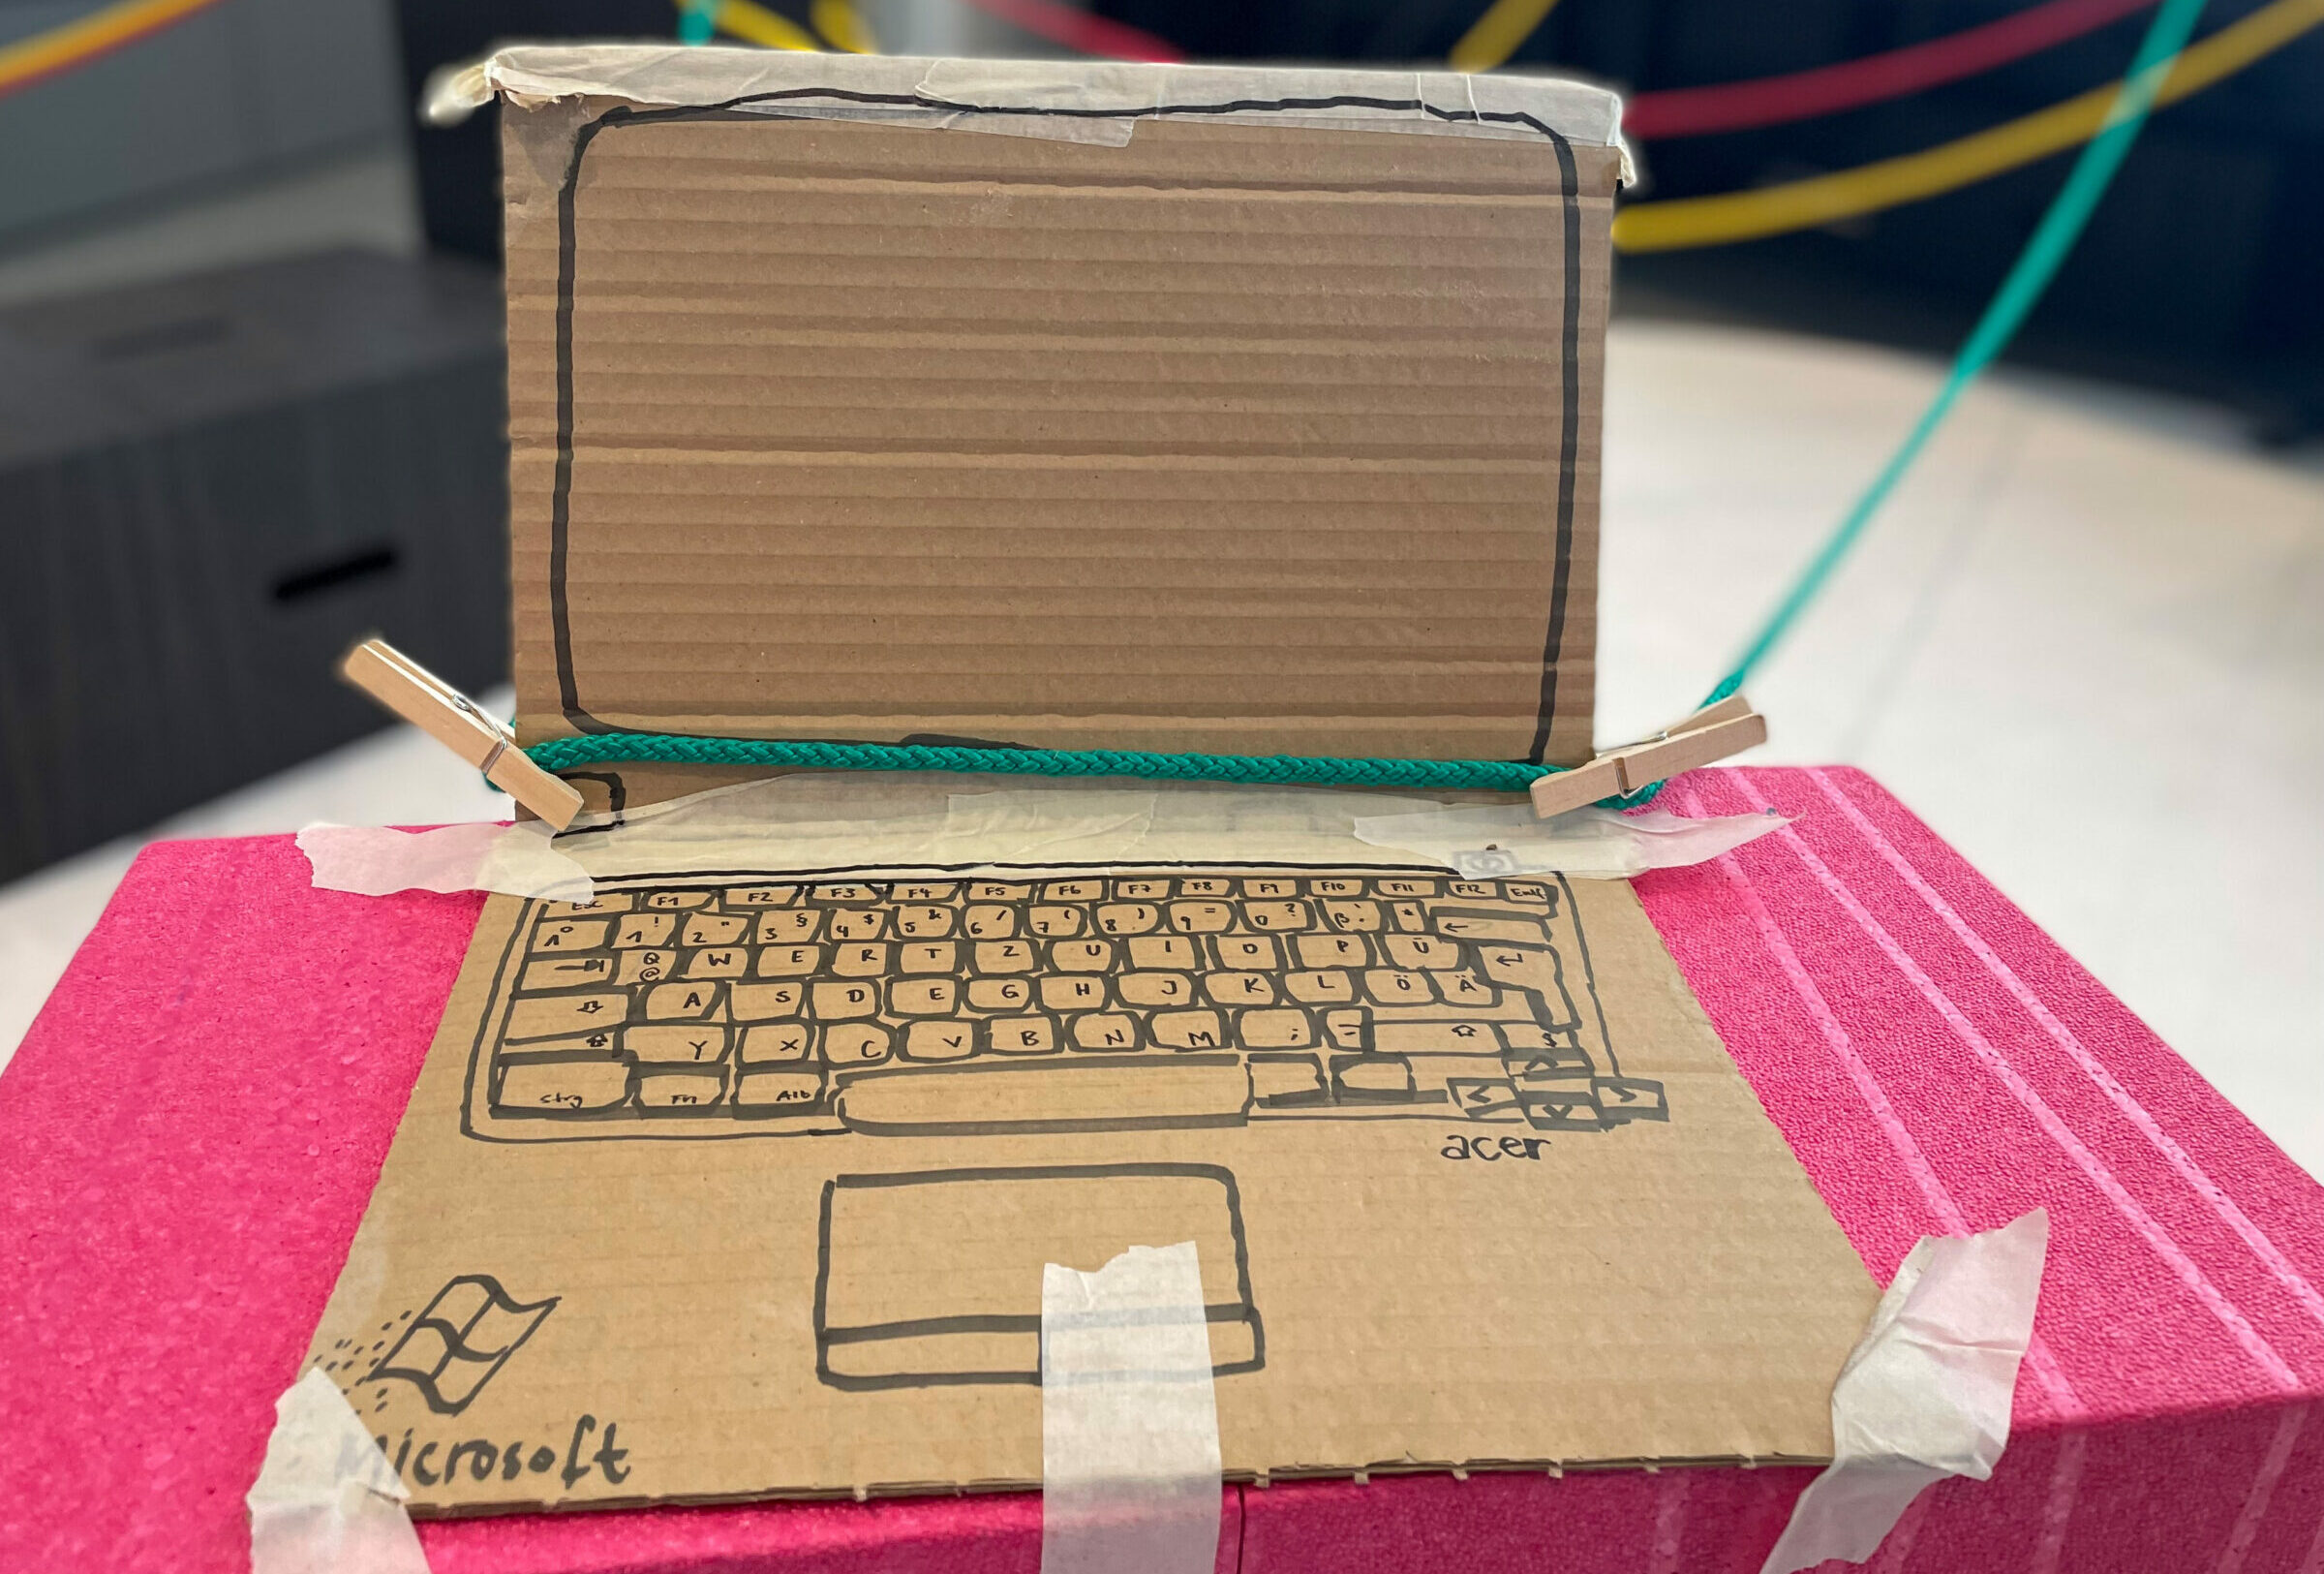 Ein aus Pappe gebastelter Laptop, der mit bunten Seilen verbunden ist.